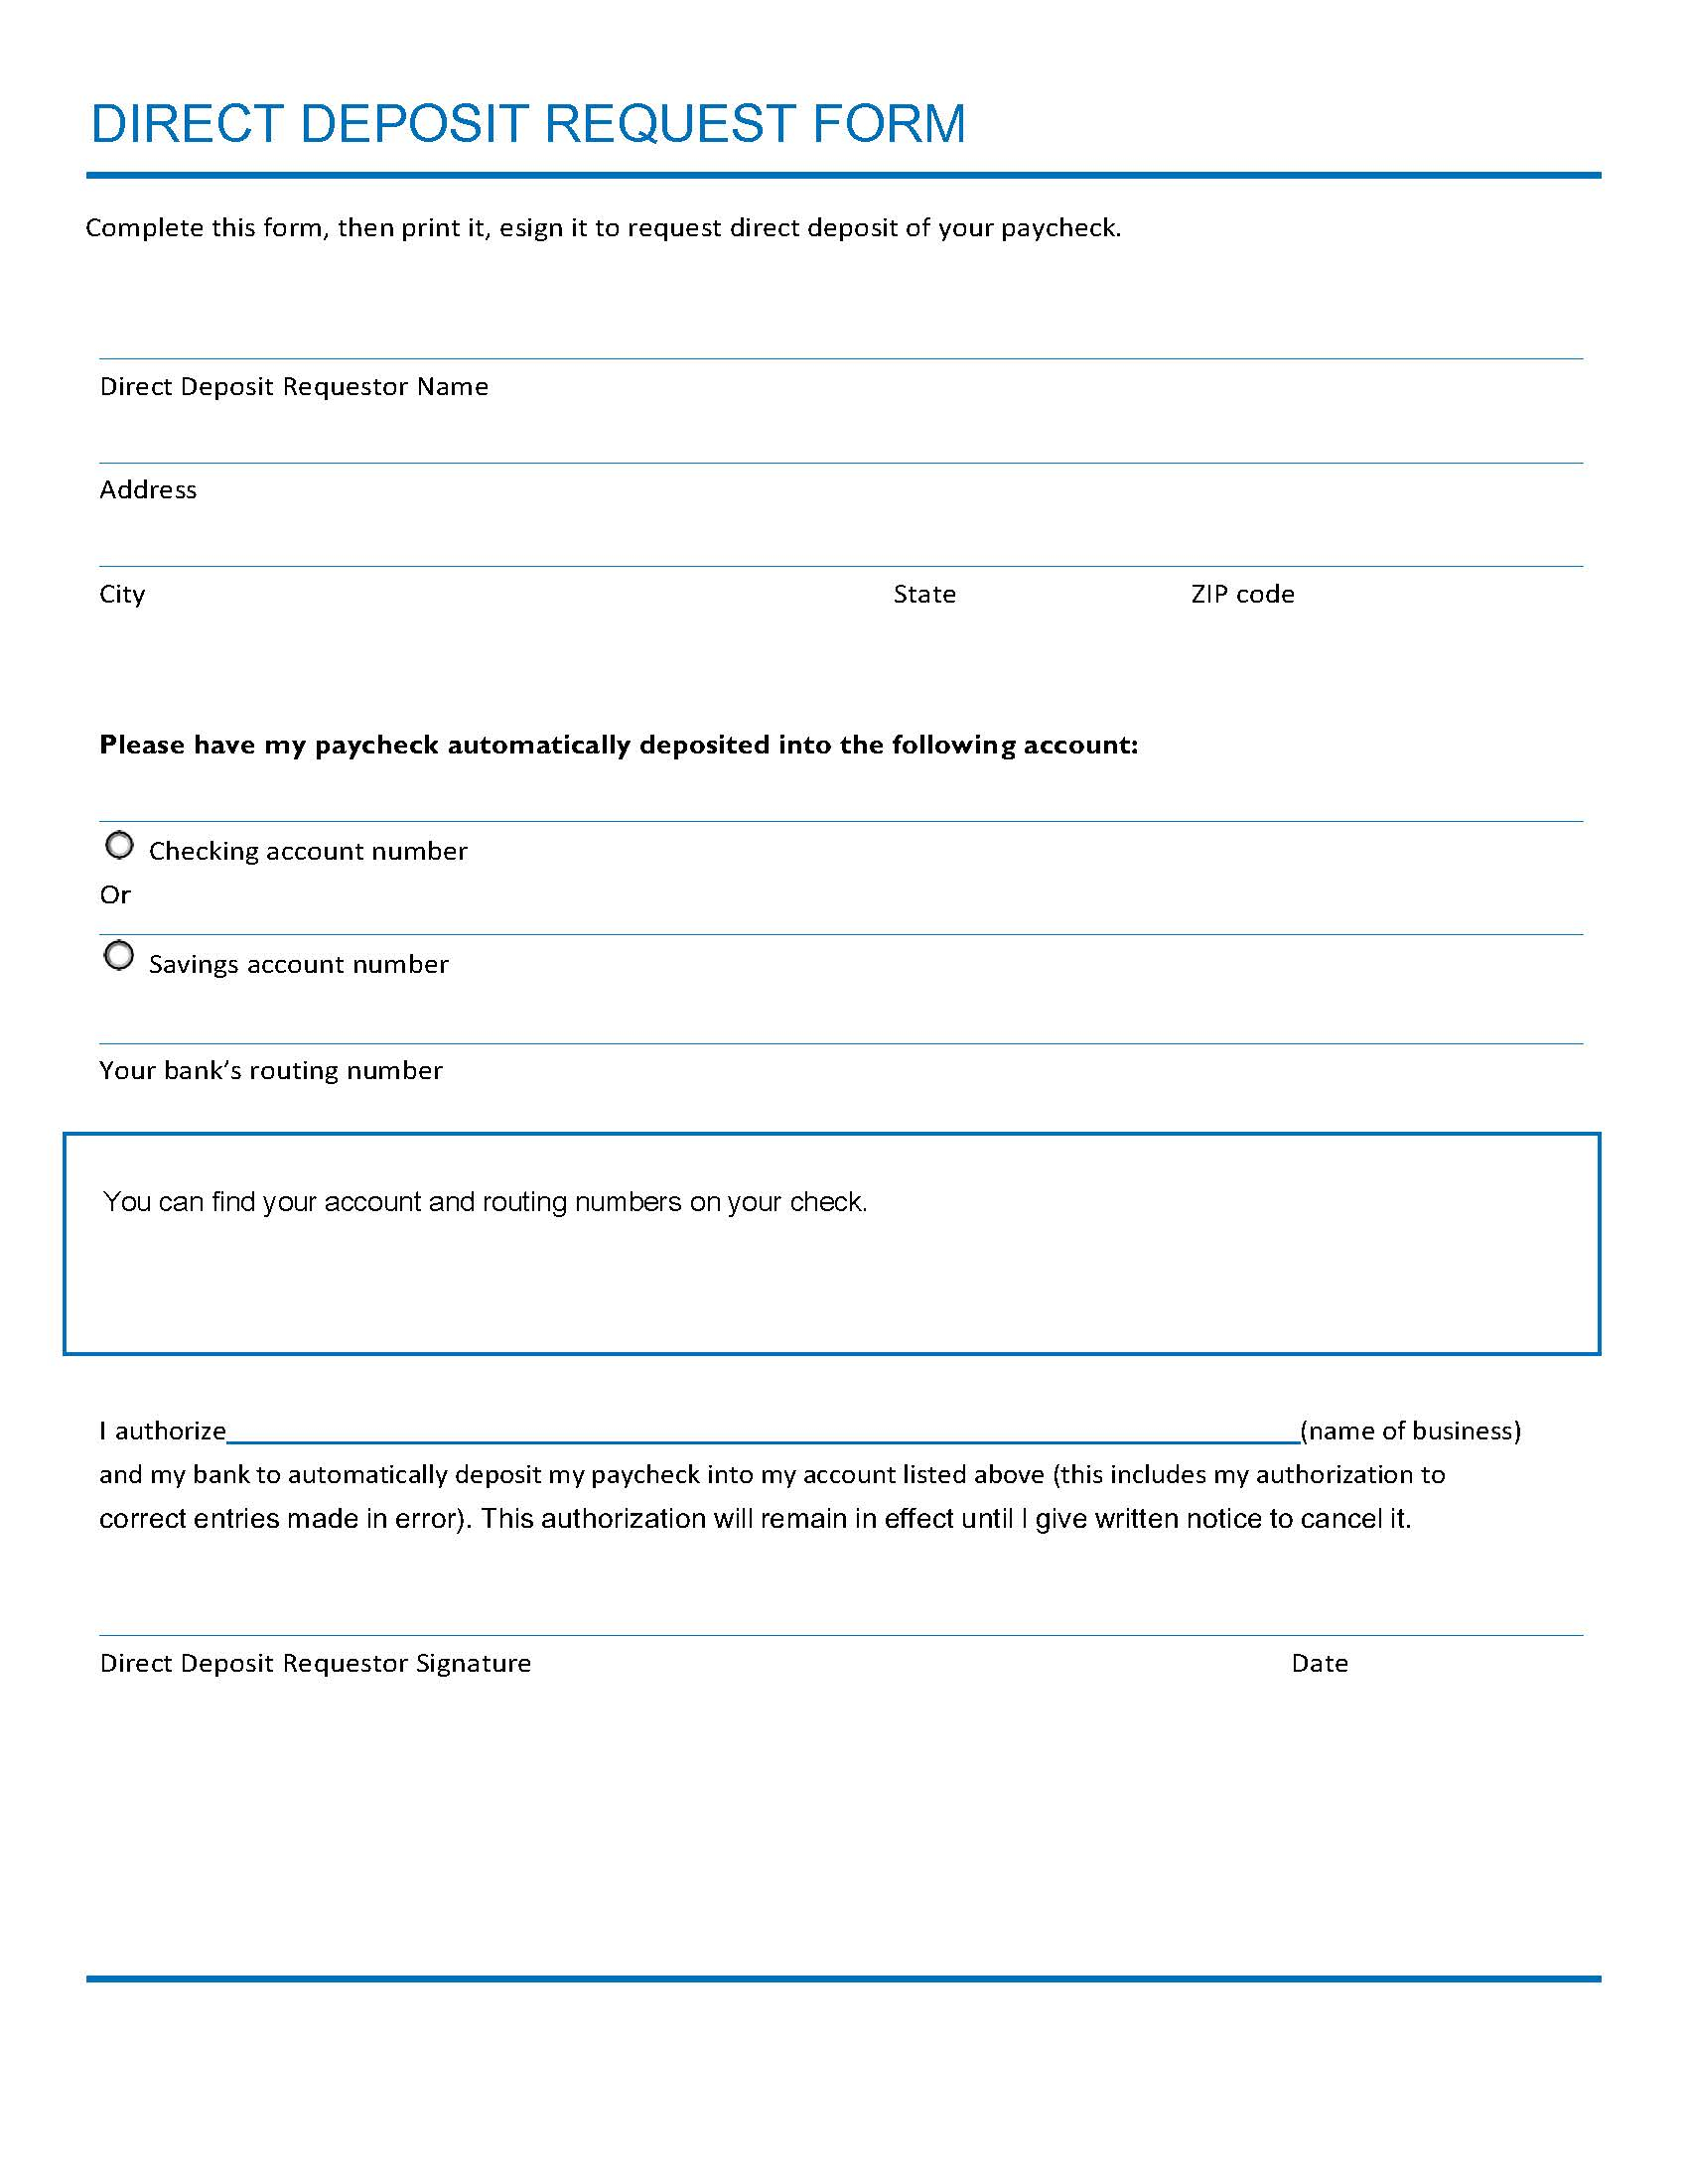 Blank Direct Deposit Enrollment Form Online  ESign Genie For Employee Direct Deposit Enrollment Form Template